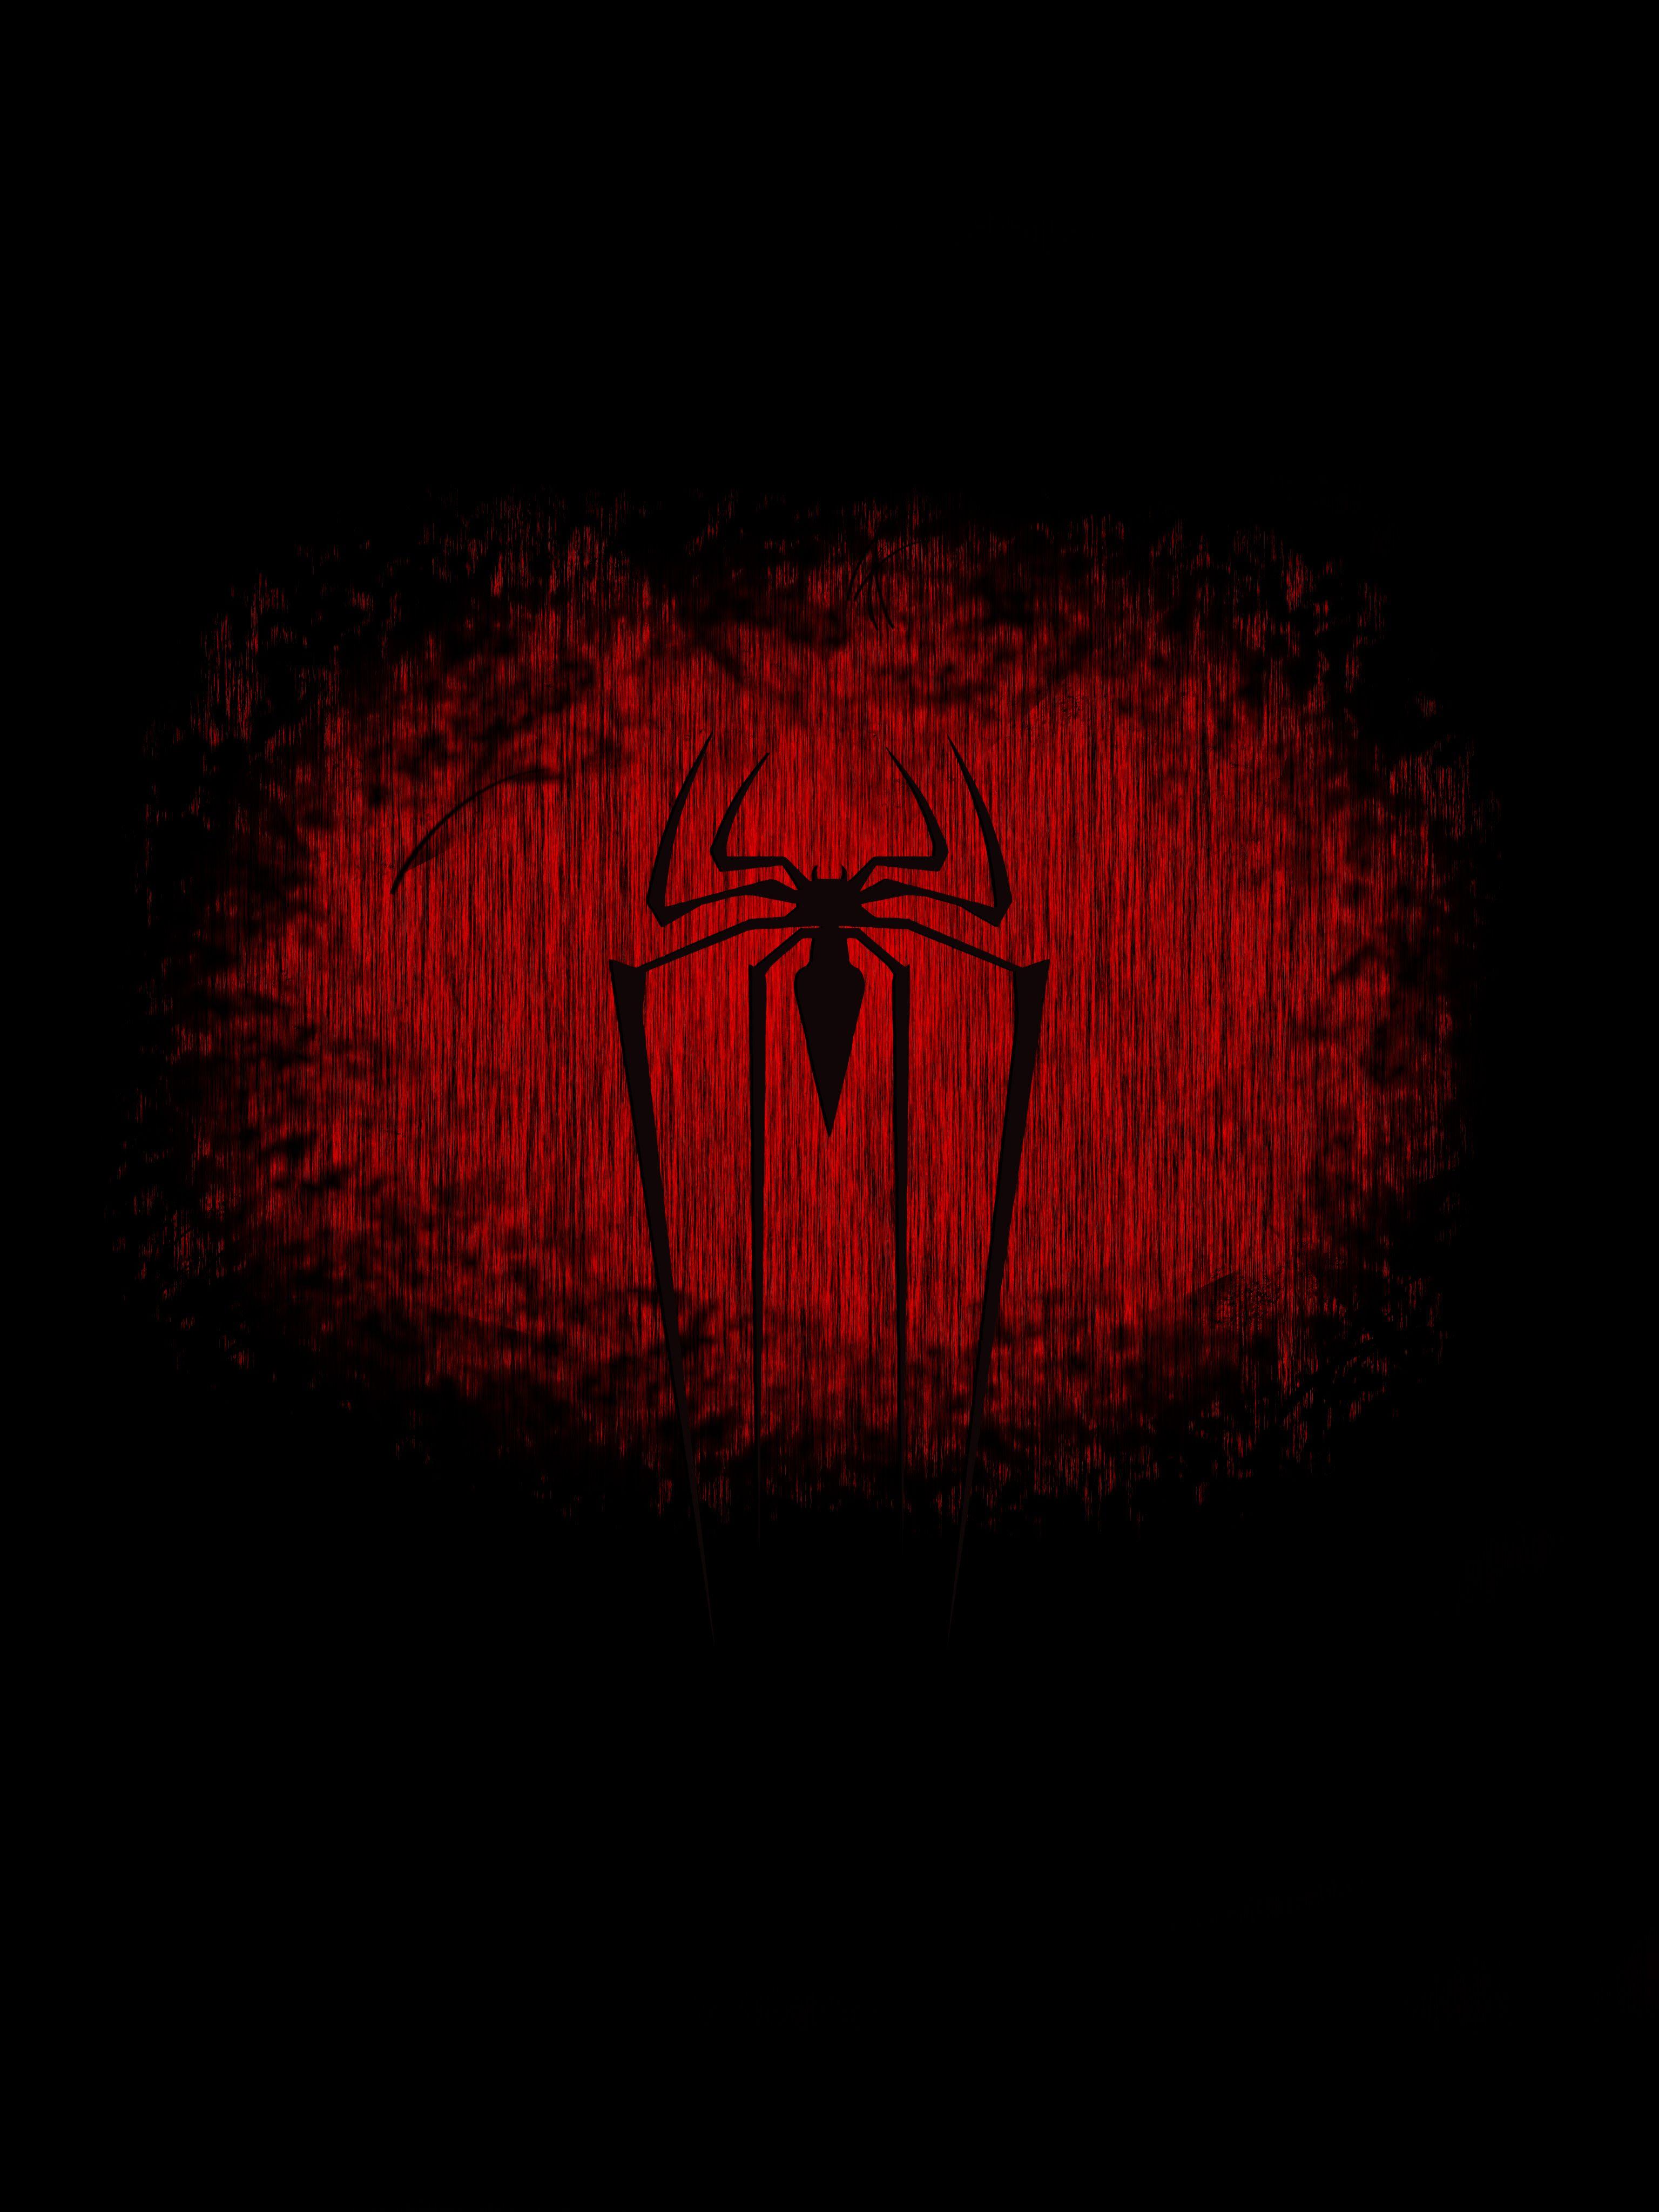 Black and Red Spider-Man Wallpapers - Top Những Hình Ảnh Đẹp